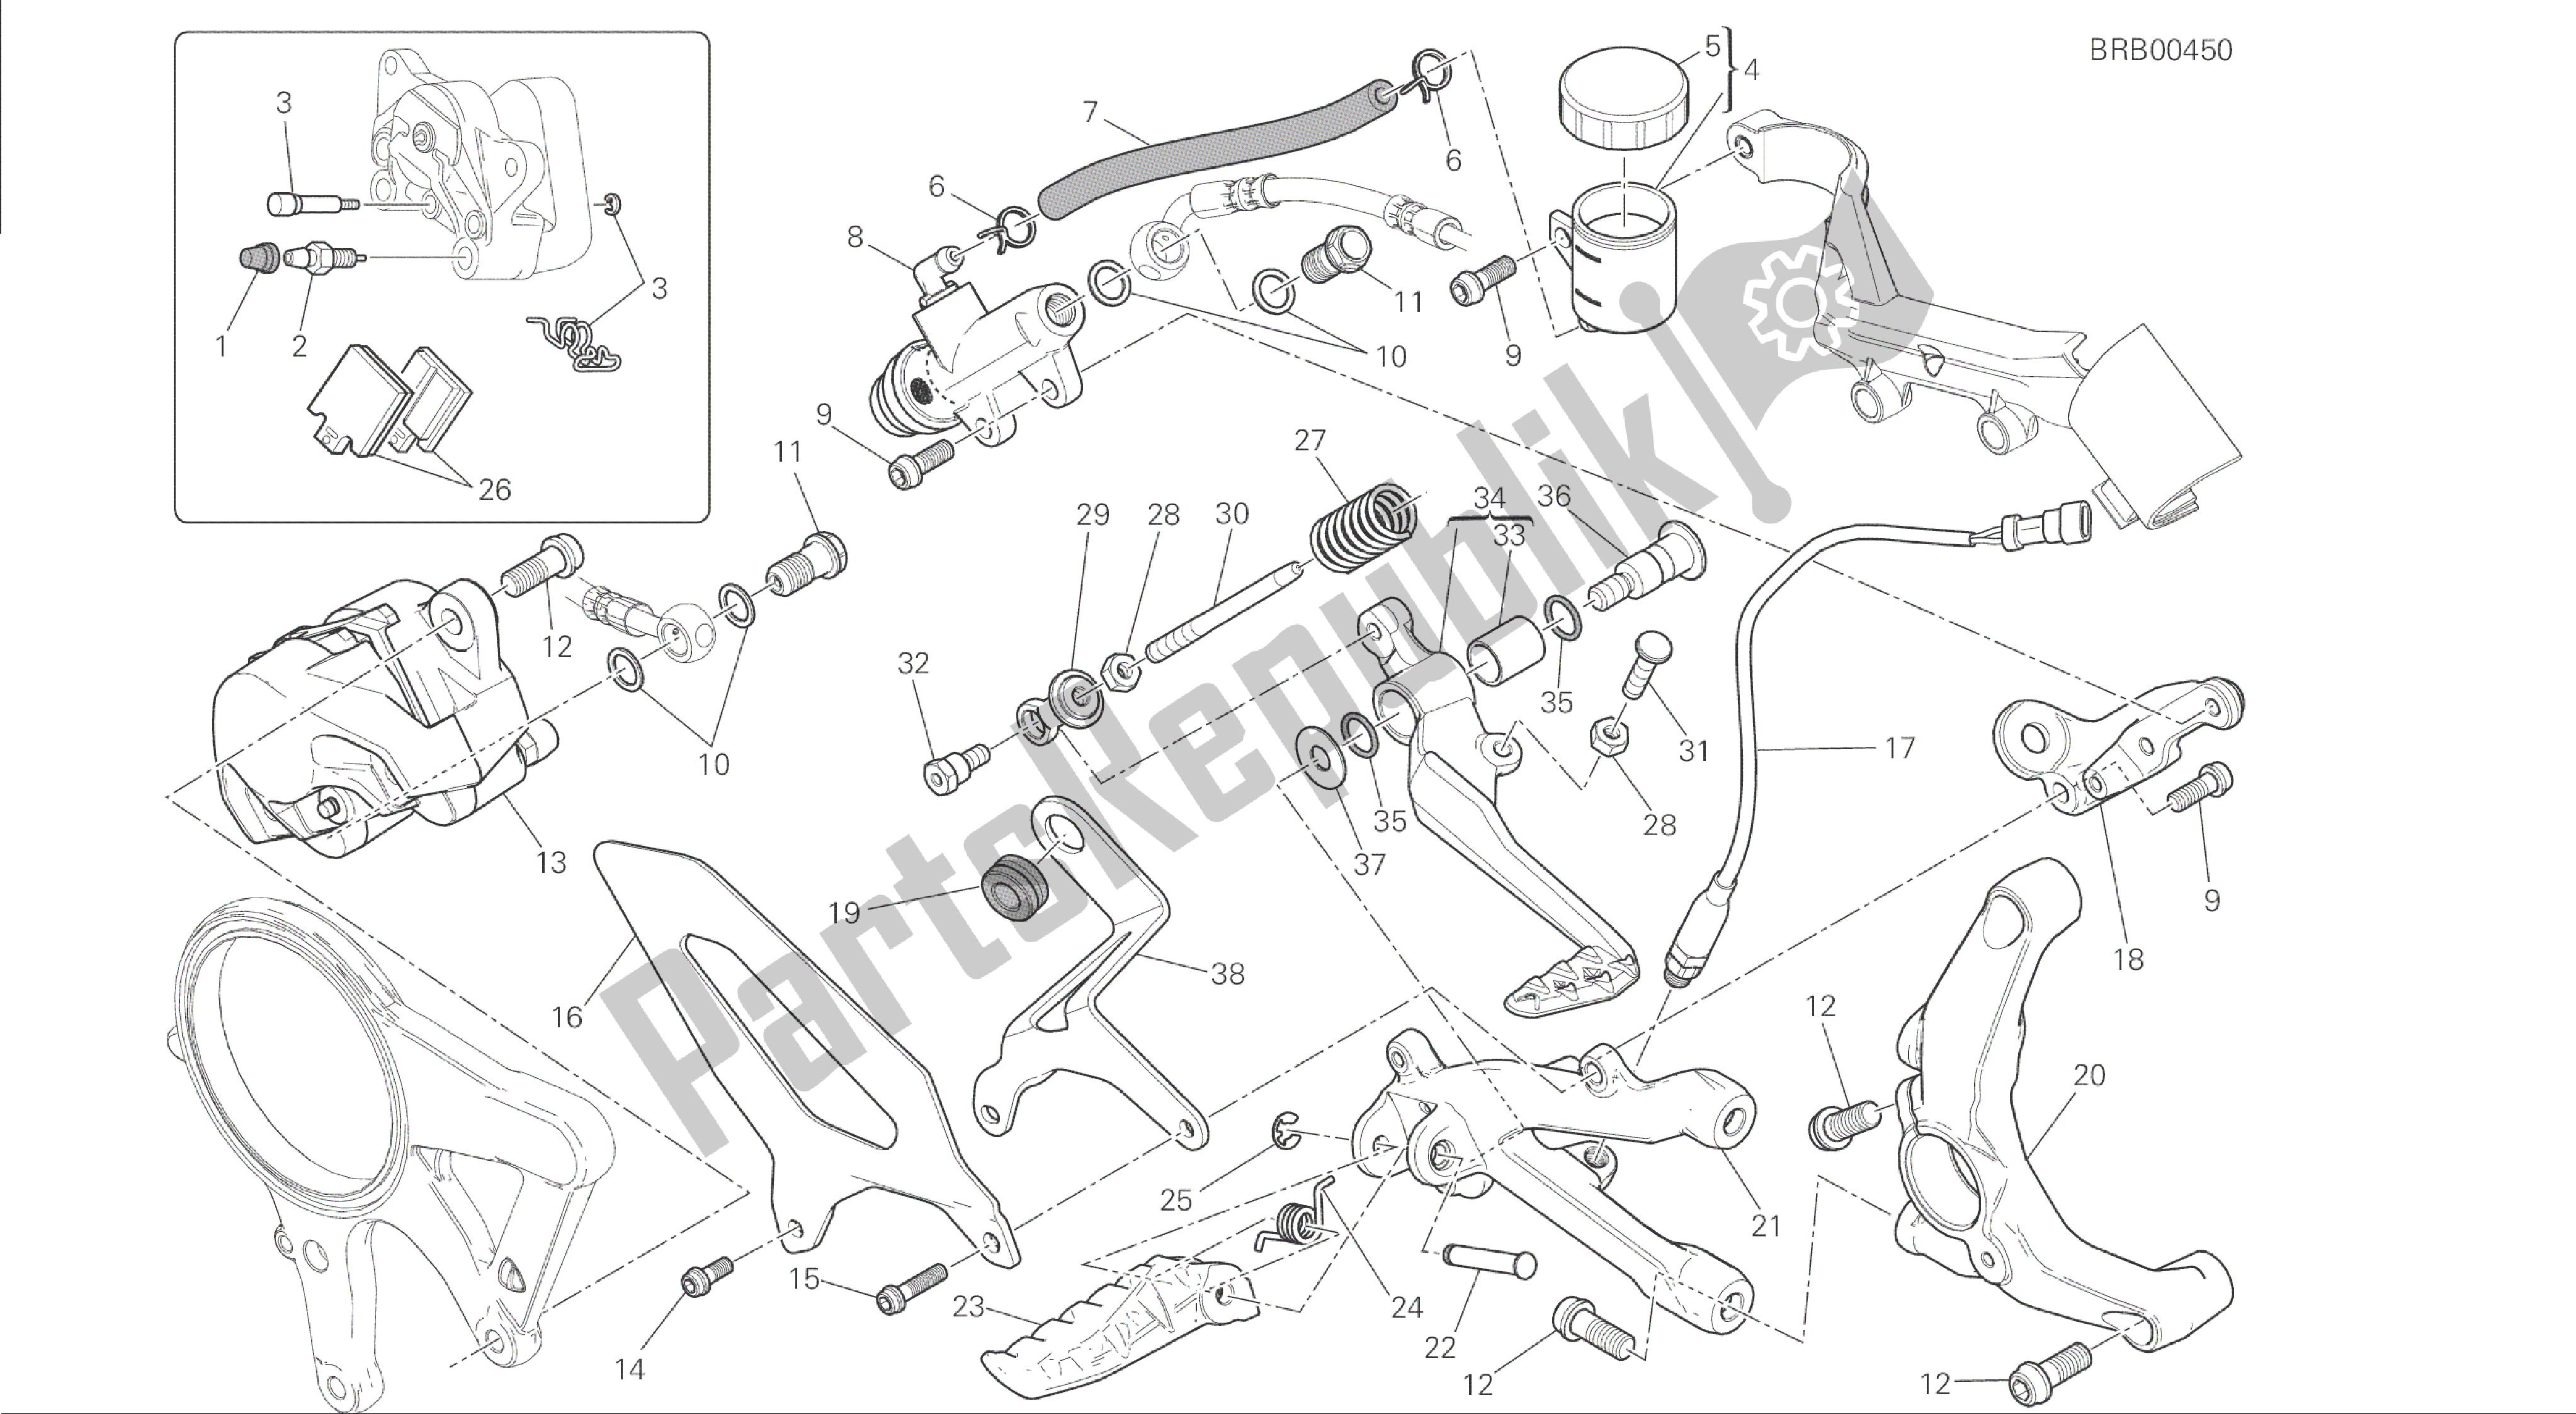 Todas las partes para Dibujo 025 - Freno Posteriore [mod: 1199 Abs; Xst: Marco De Grupo Aus, Bra, Chn, Eur, Fra, Jap] de Ducati Panigale ABS 1199 2014